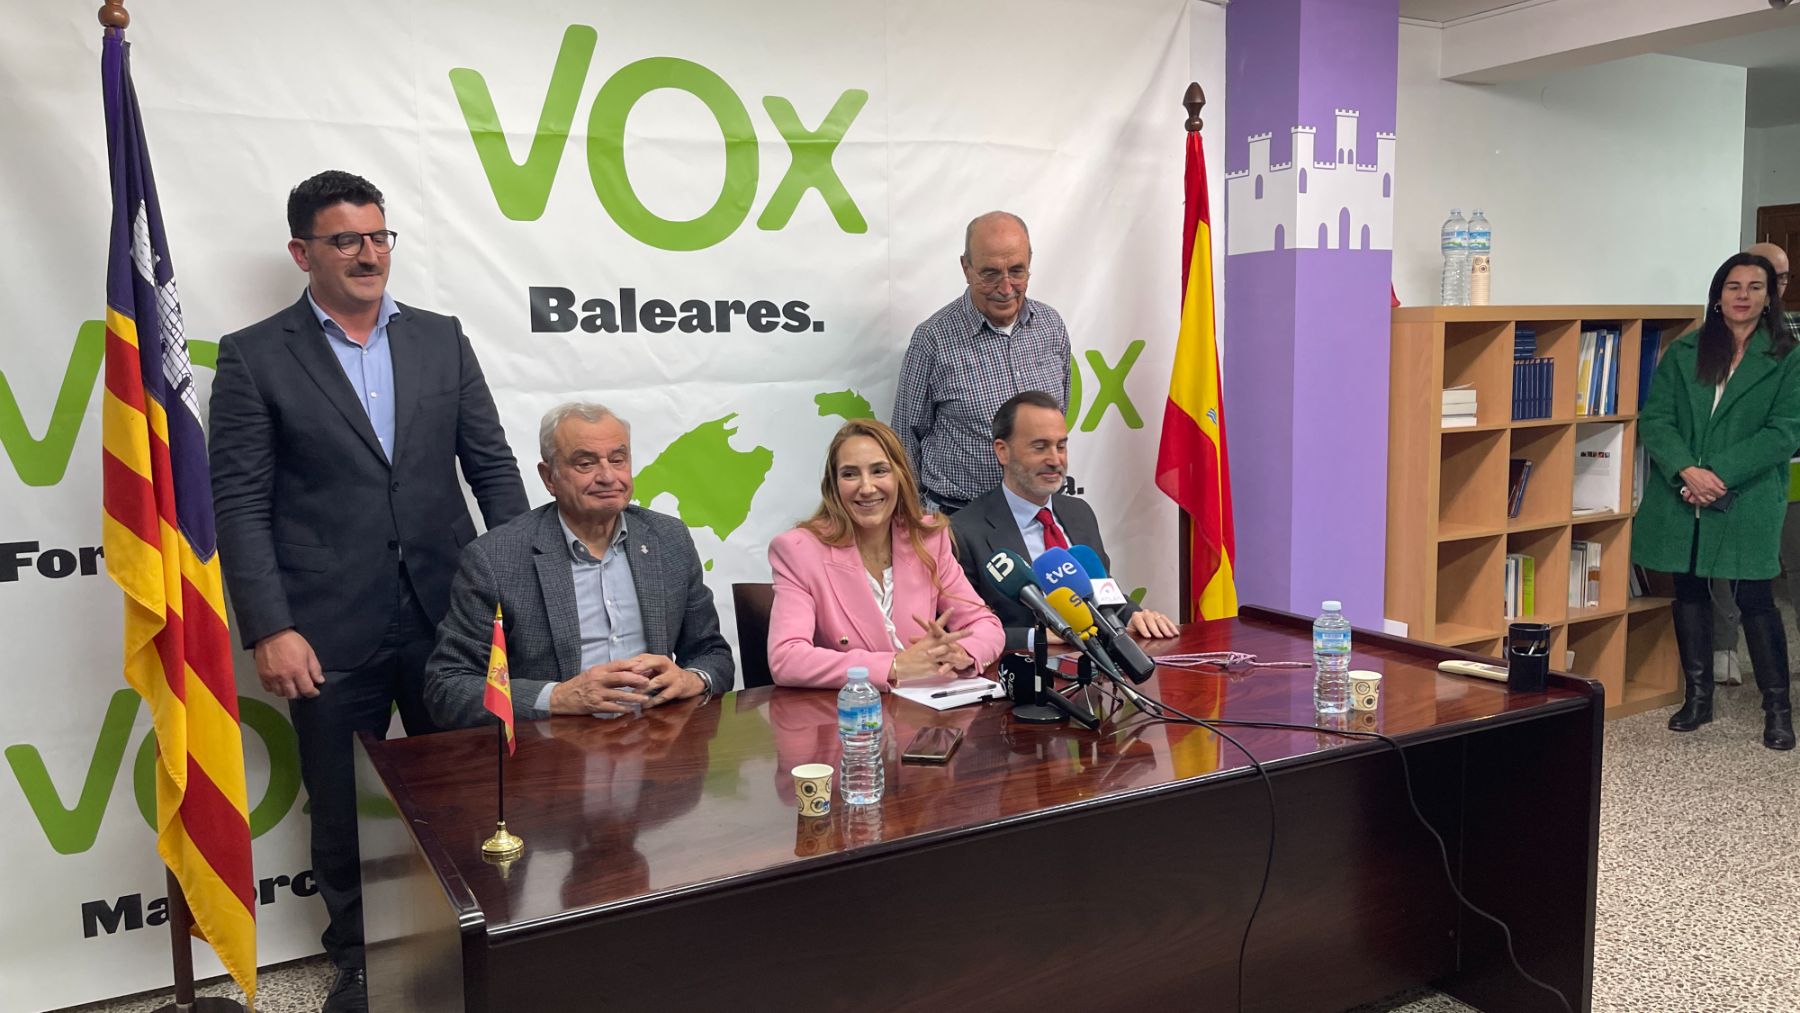 La dirección de Vox en Baleares con Patricia de las Heras en el centro.